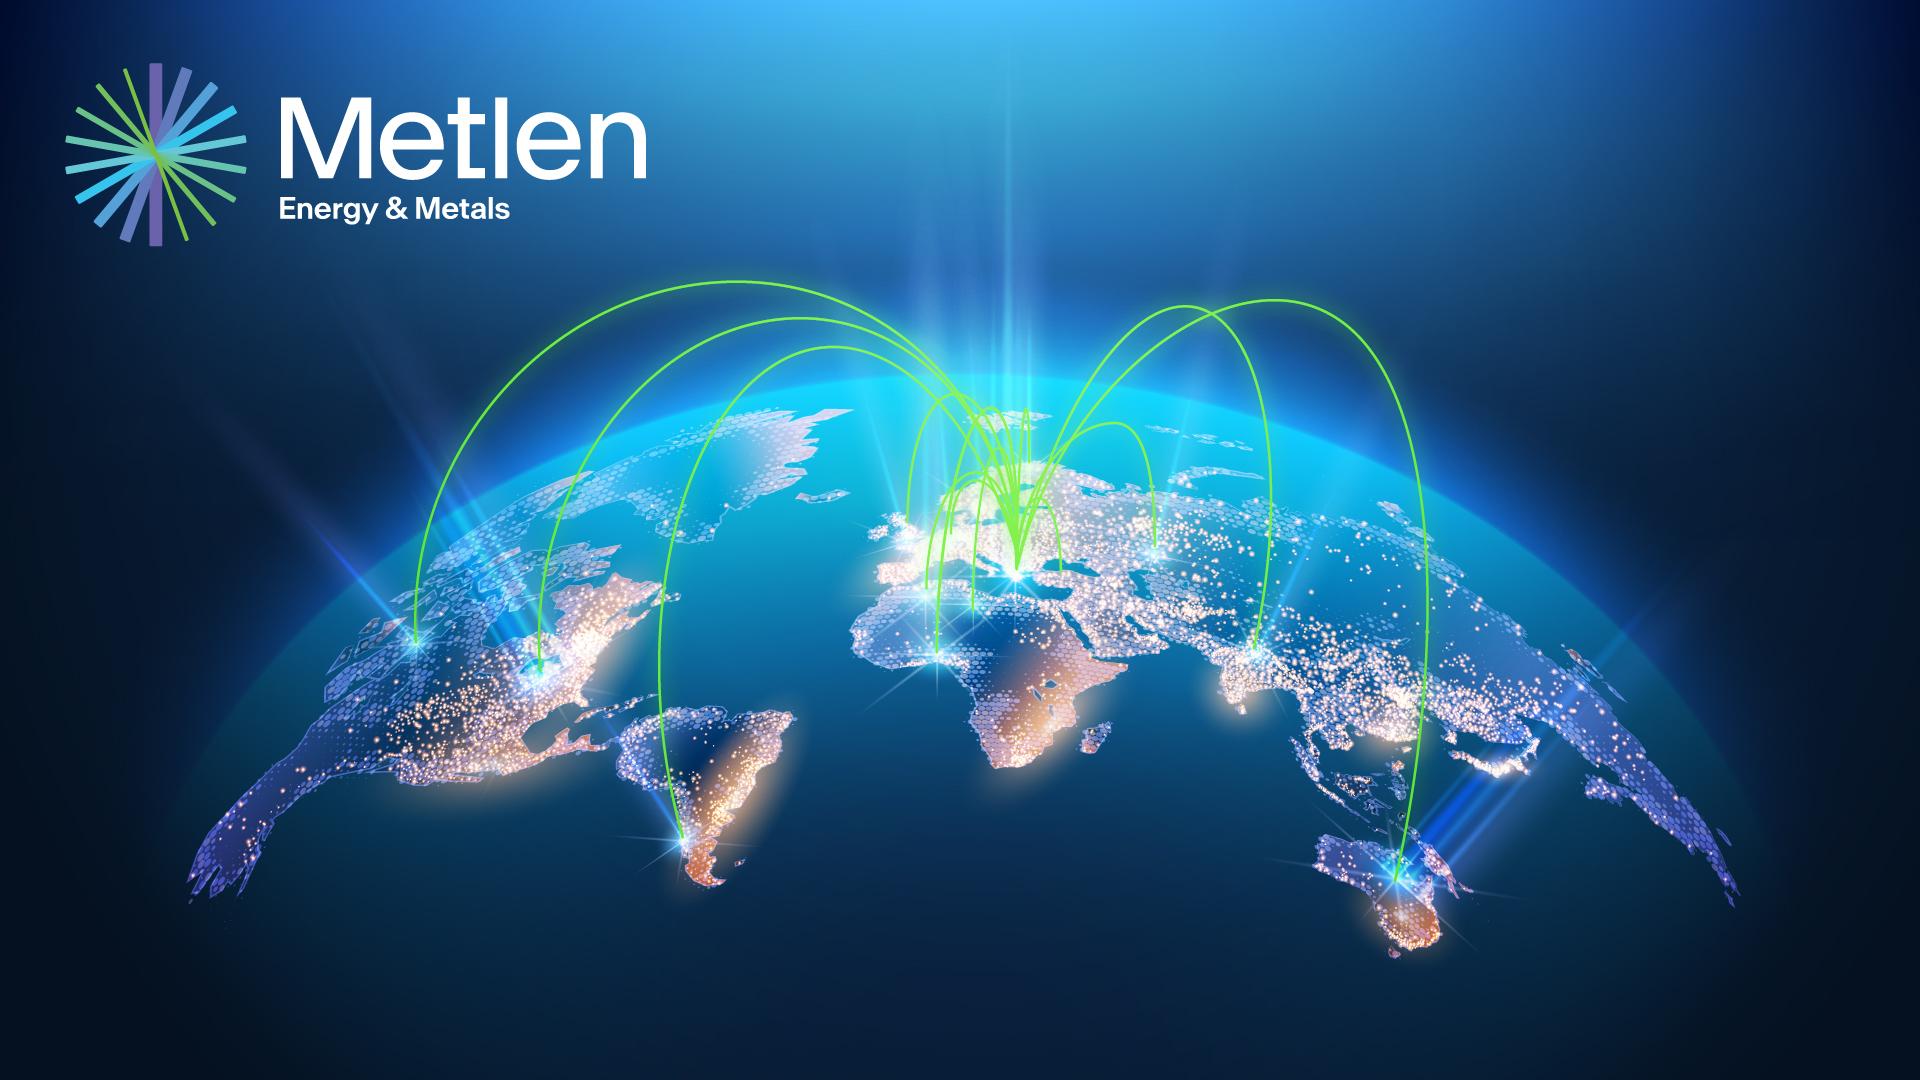 Metlen Energy & Metals header cover image